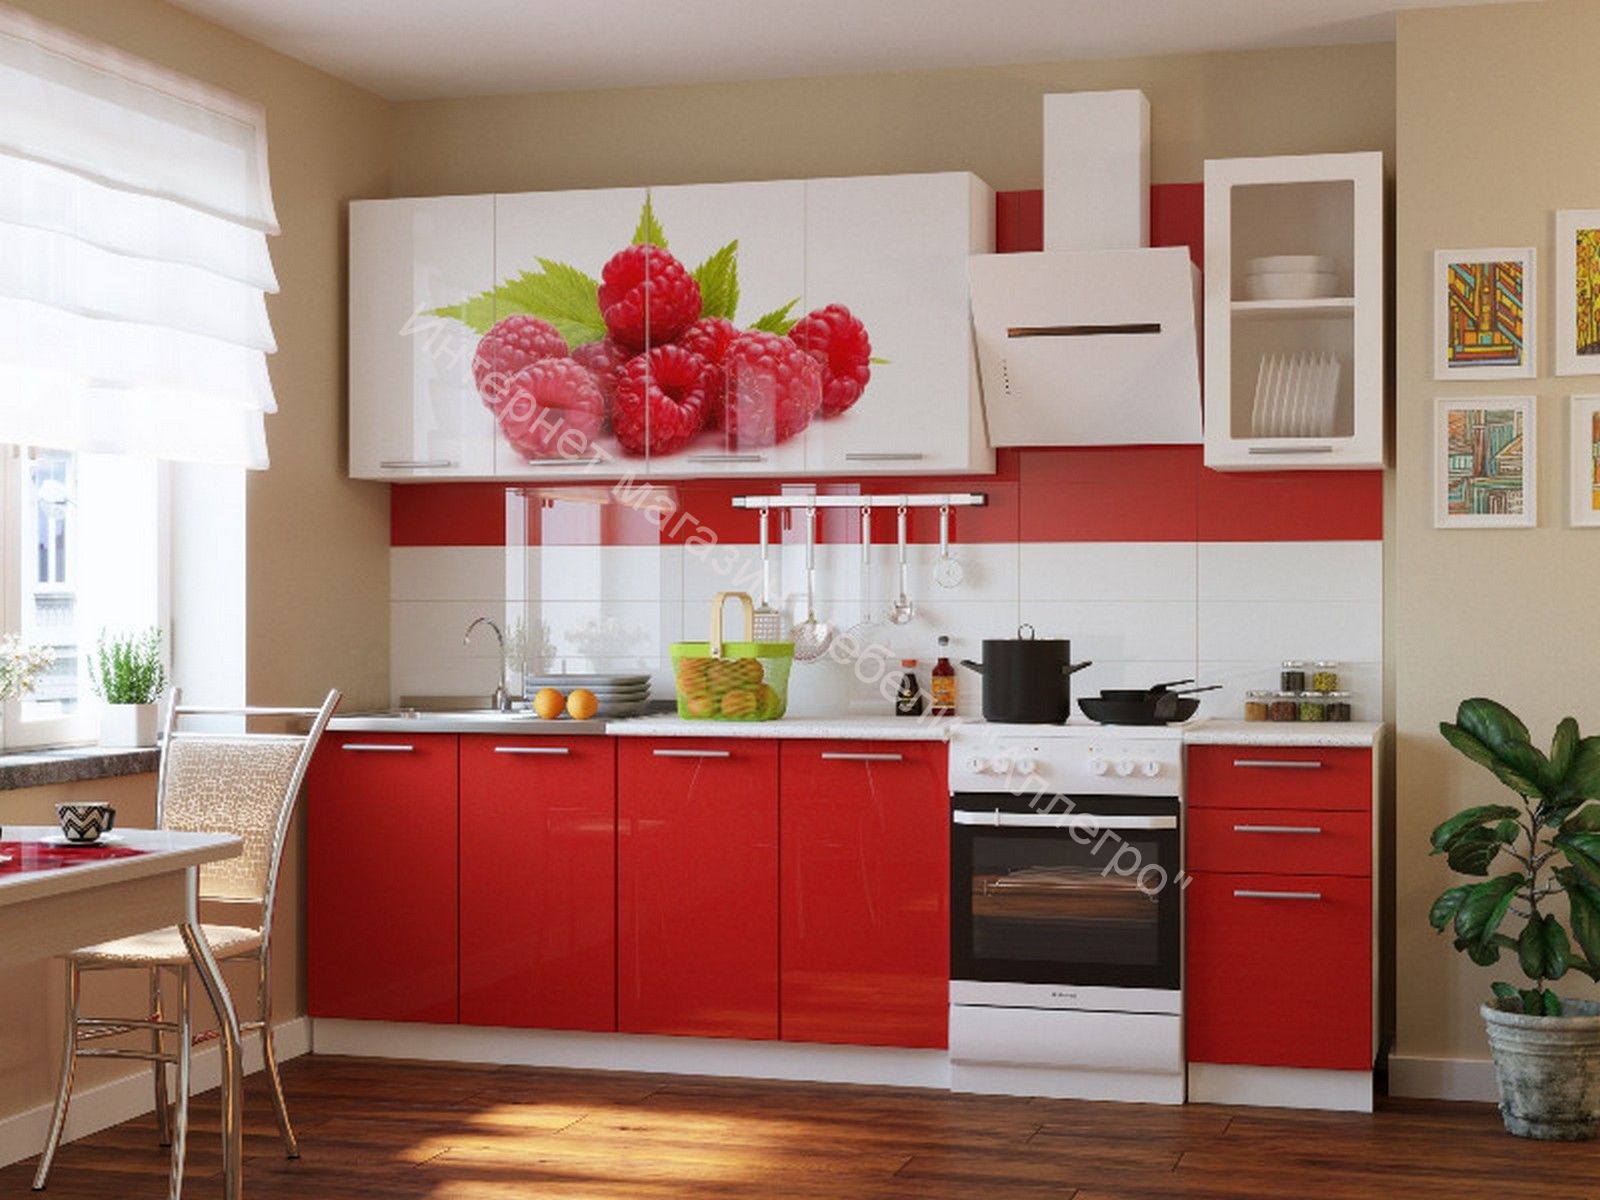 Кухни с доставкой по россии. Кухня "красные маки" 1,6м. Кухня в Красном цвете. Кухонный гарнитур красного цвета.